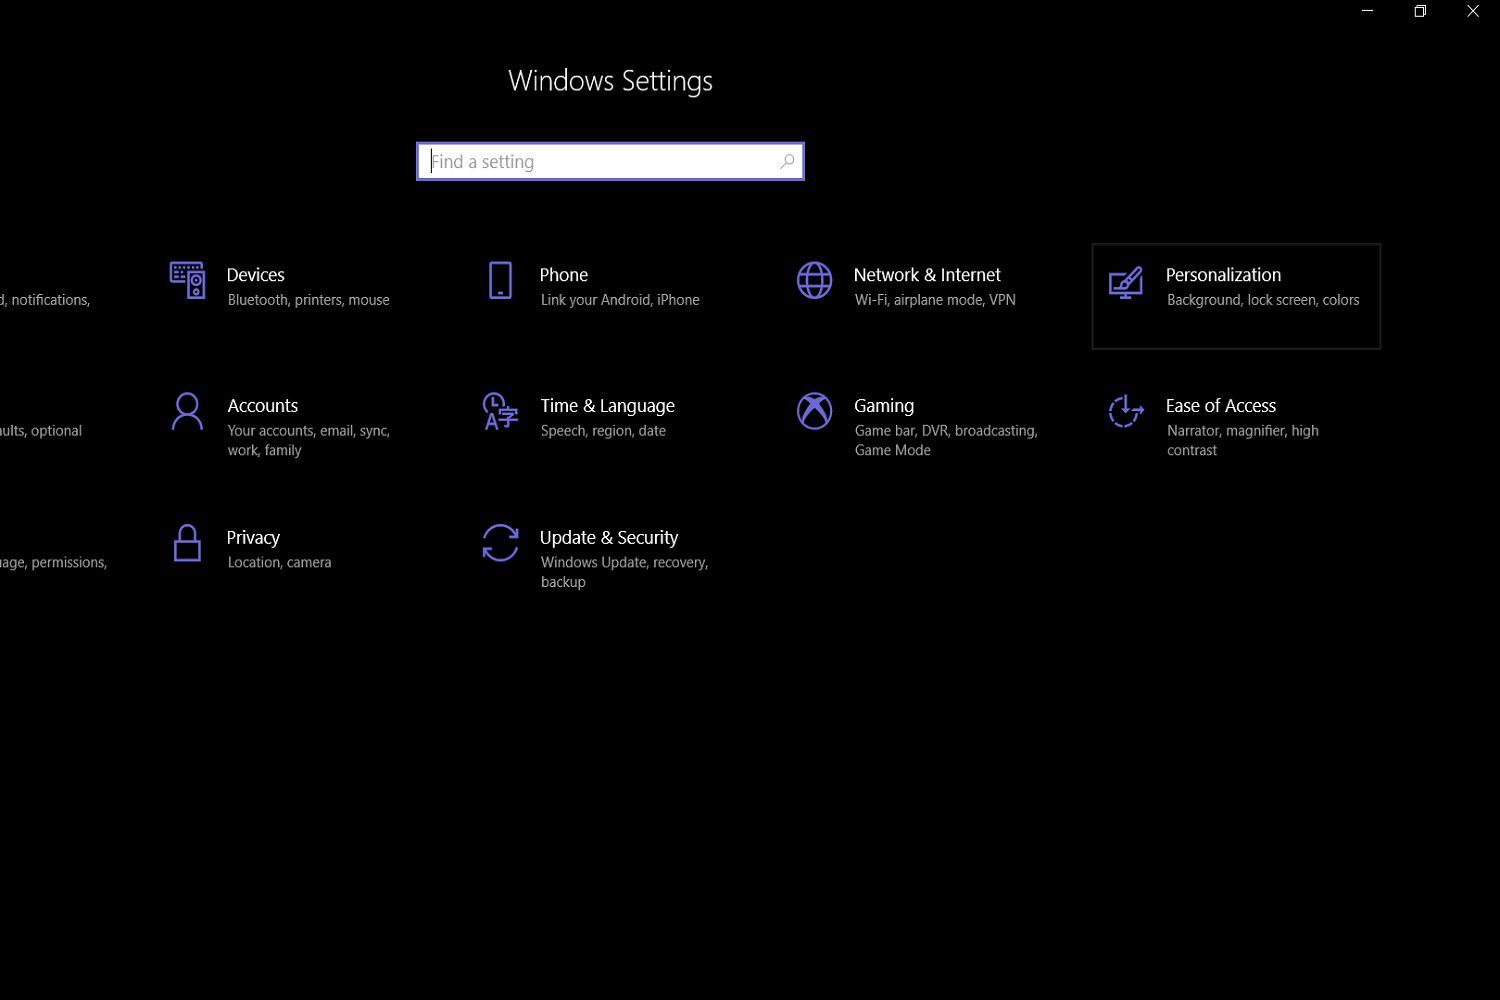 Снимок экрана, показывающий главное меню настроек ПК с Windows 10 и расположение кнопки подменю «Персонализация».